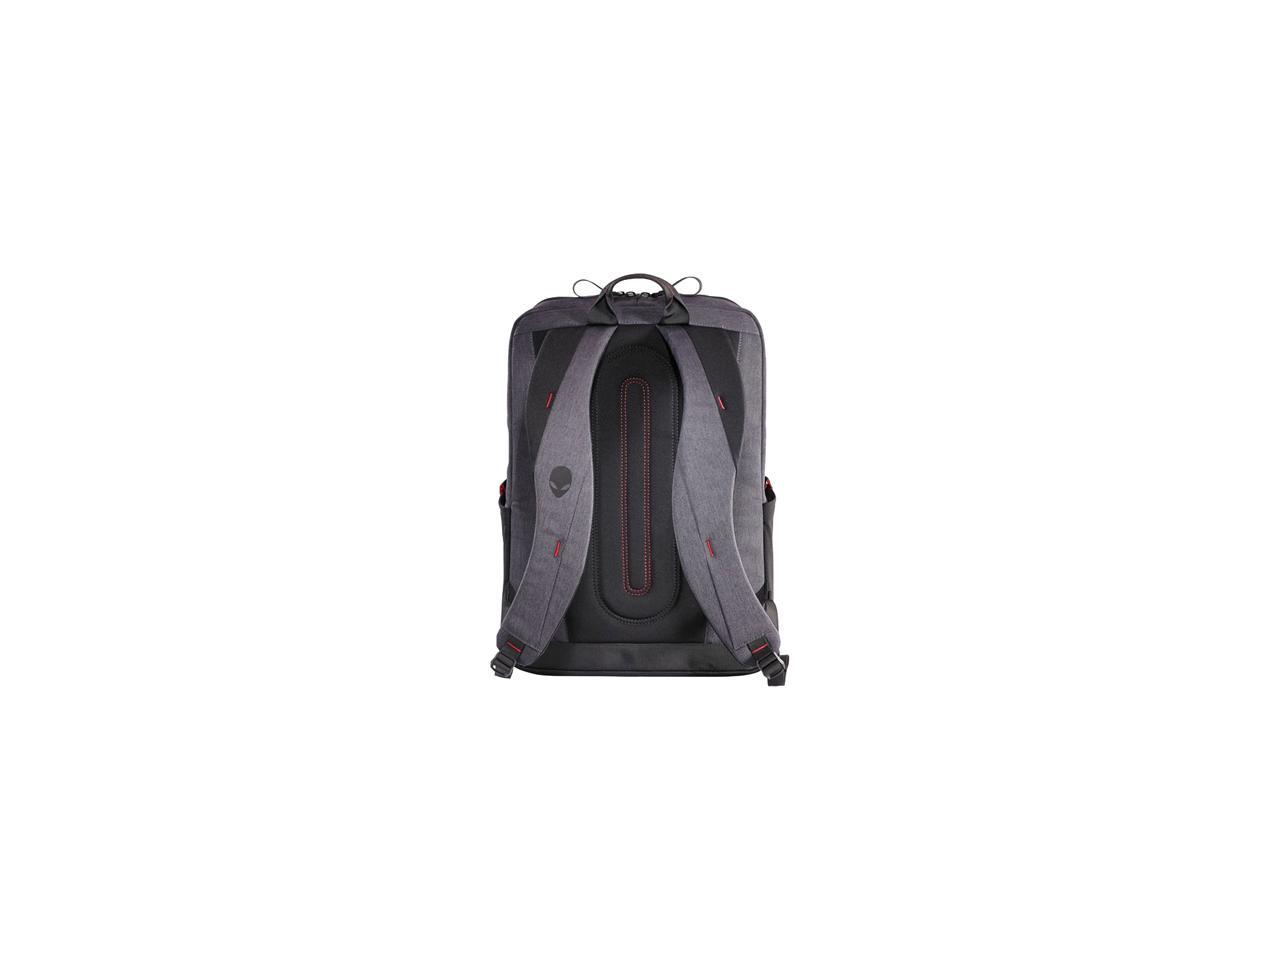 Mobile Edge AWM17BPP Alienware M17 Pro Backpack for 17-inch Laptop - Black 871981001153 | eBay